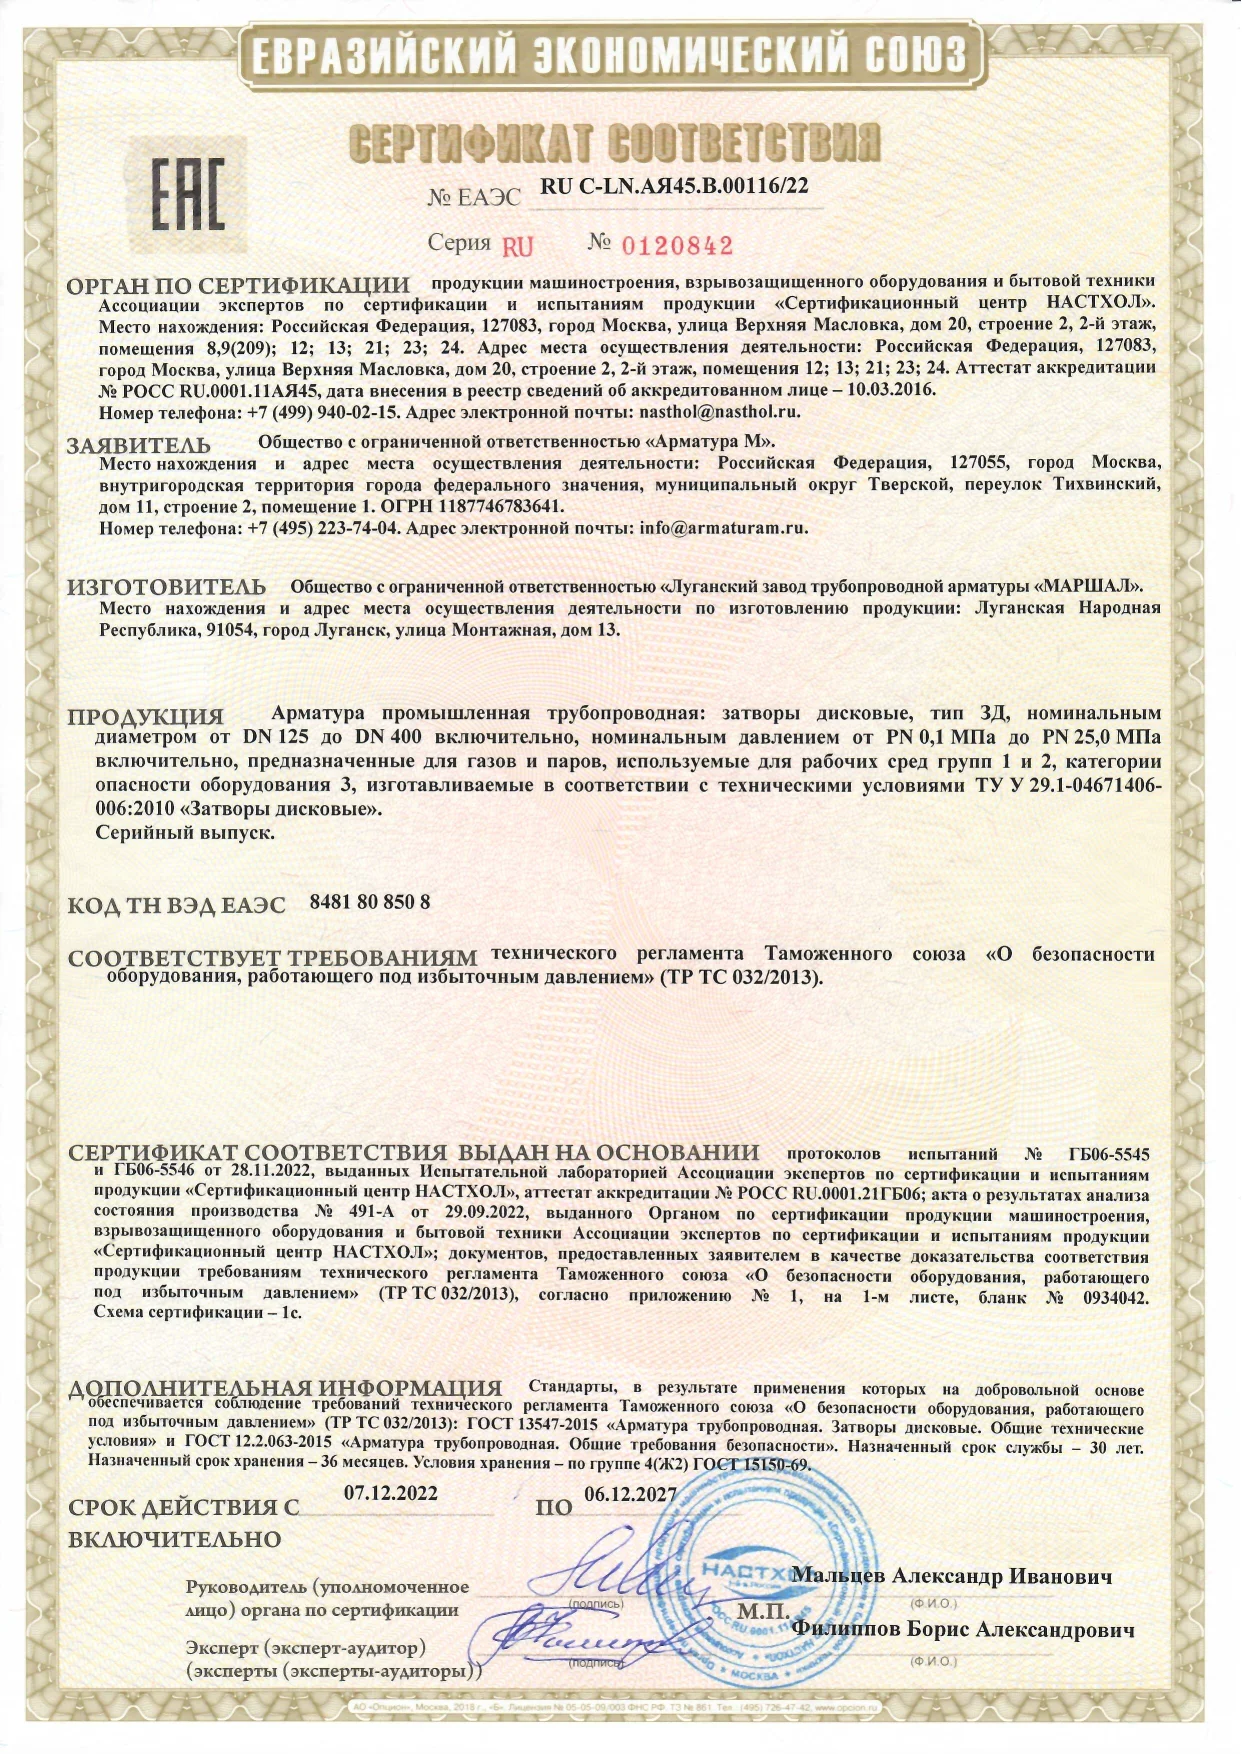 Сертификат соответствия ТР ТС 032/2013 на затворы дисковые до 06.12.2027